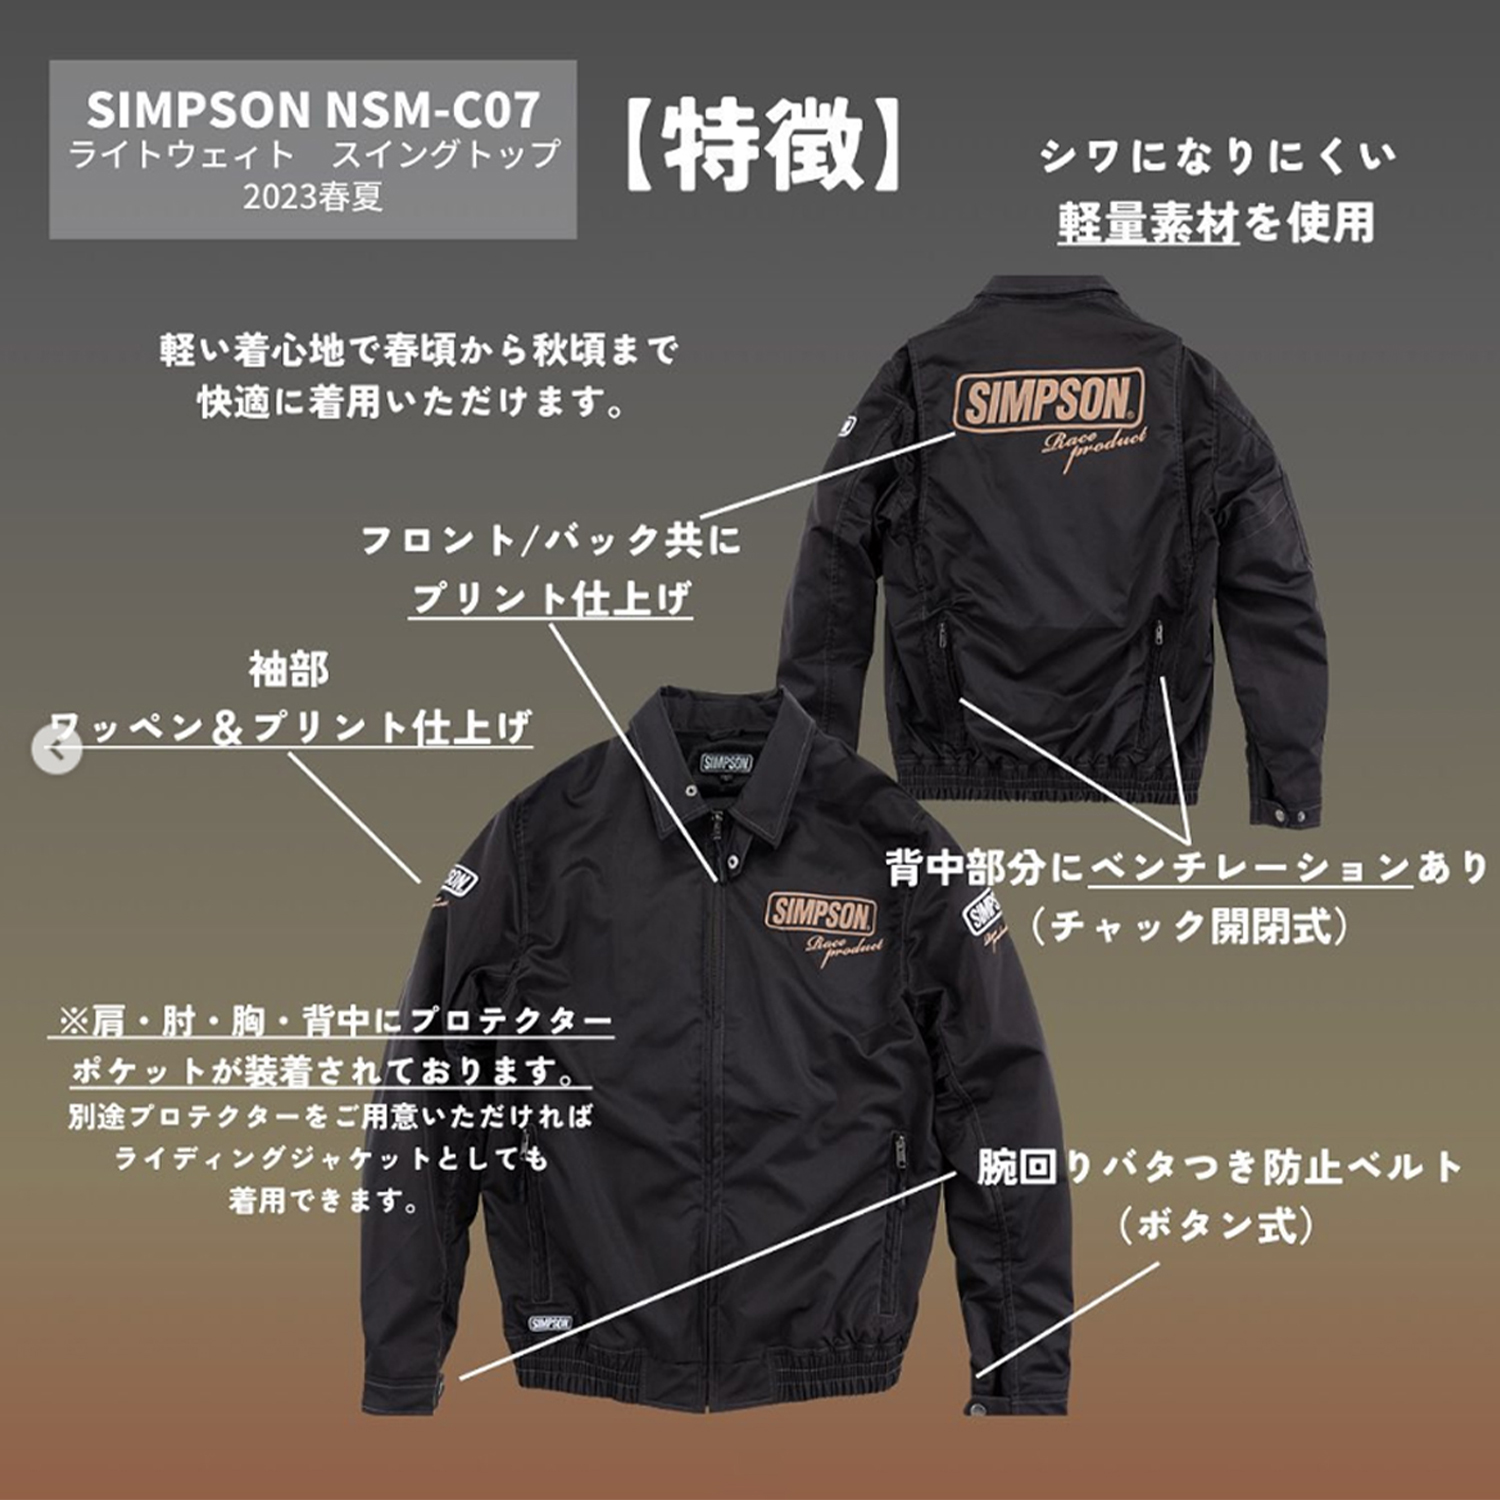 セール品 シンプソンジャケット 春夏モデル NSM-C05 Simpson 2023SS 